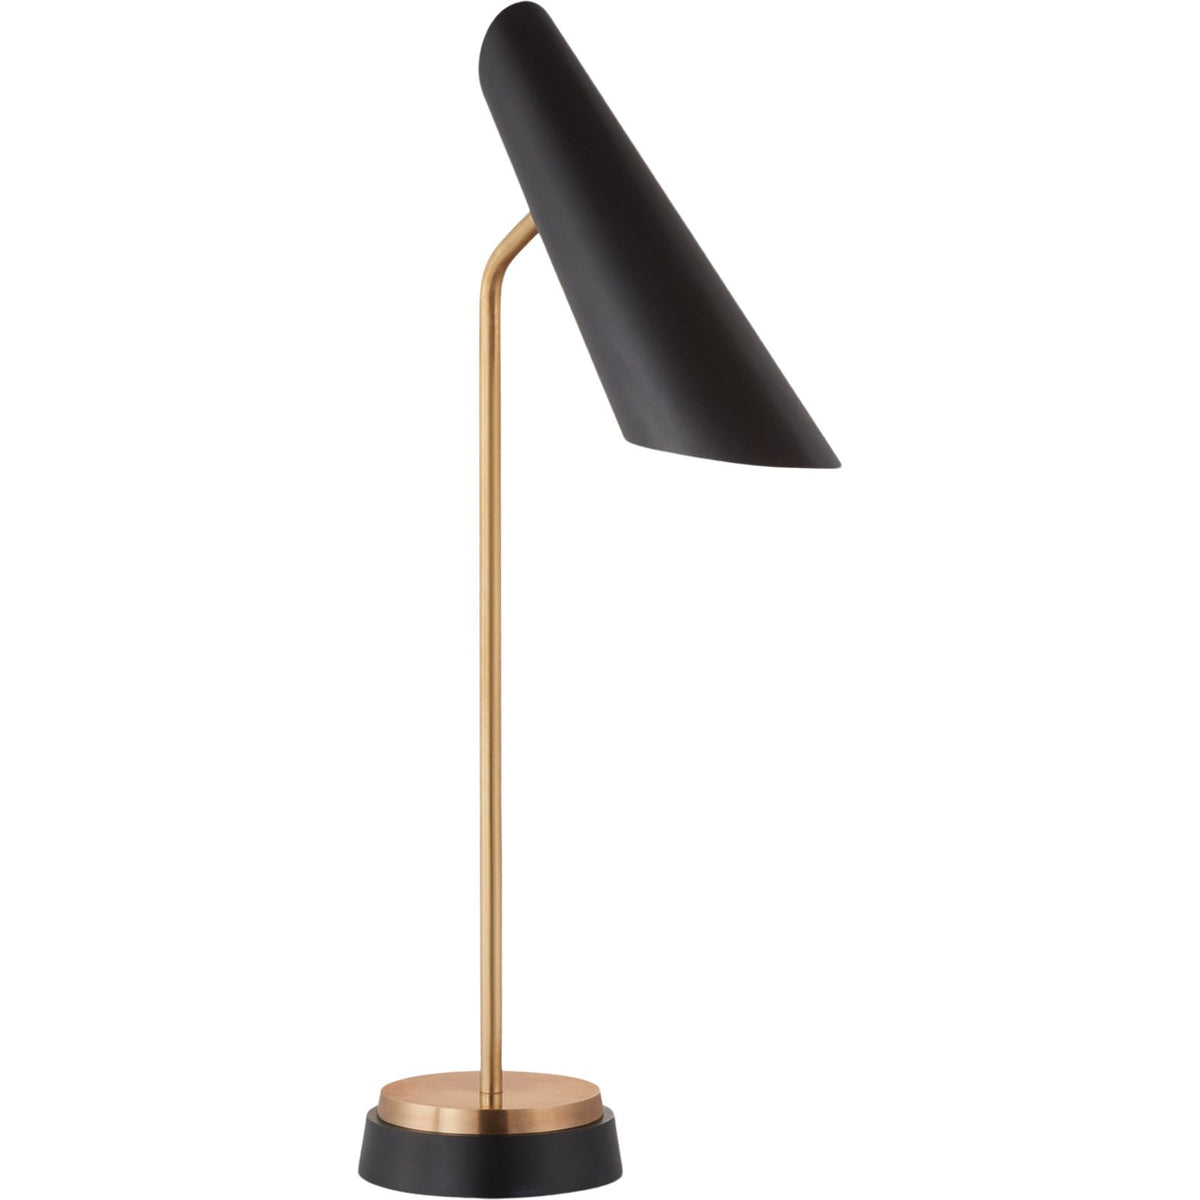 Franca Pivoting Desk Lamp, Black